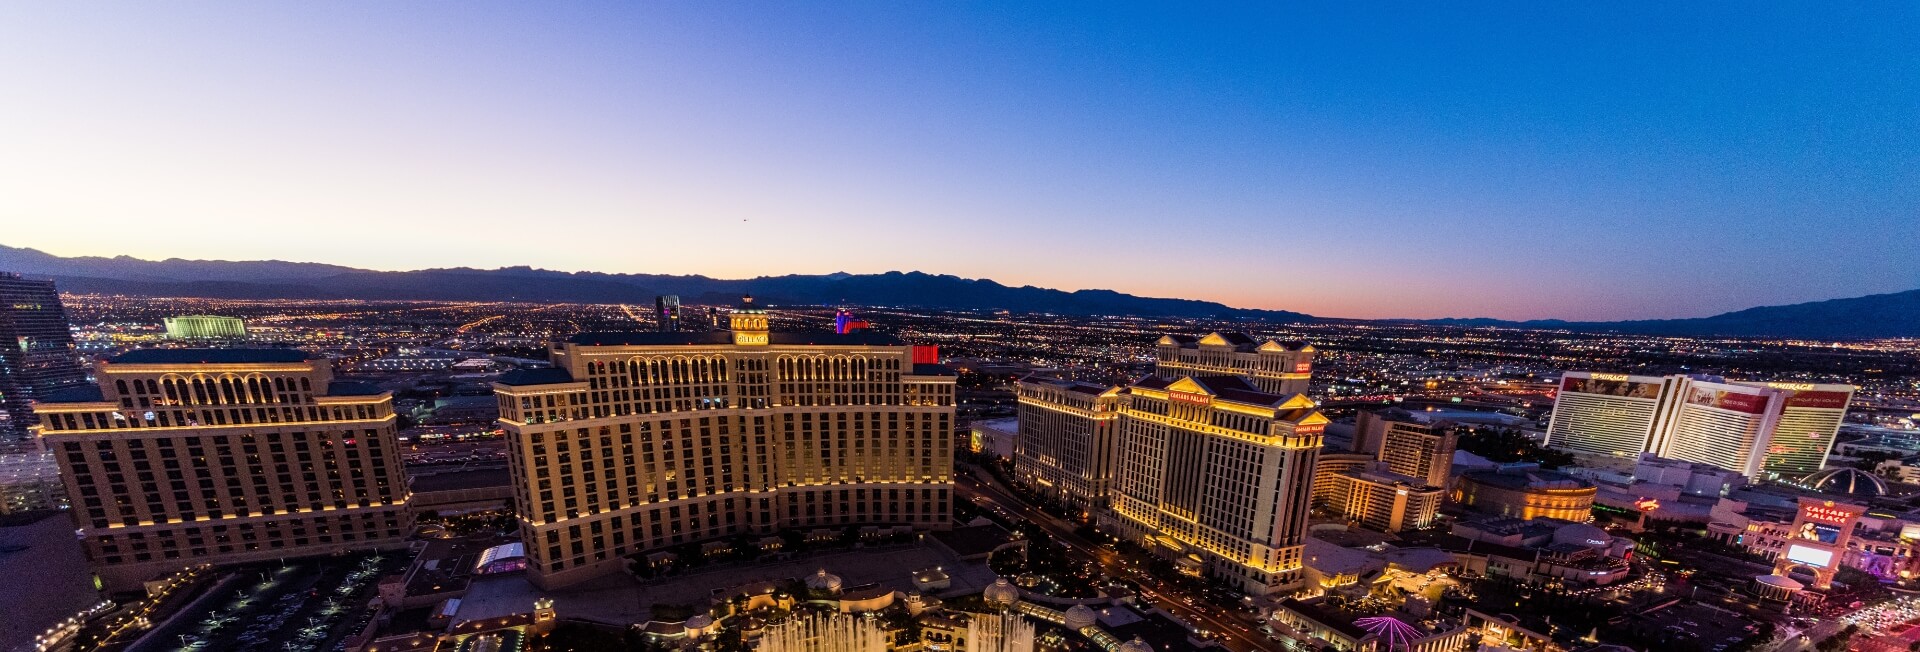 Panoramic view of Las Vegas.